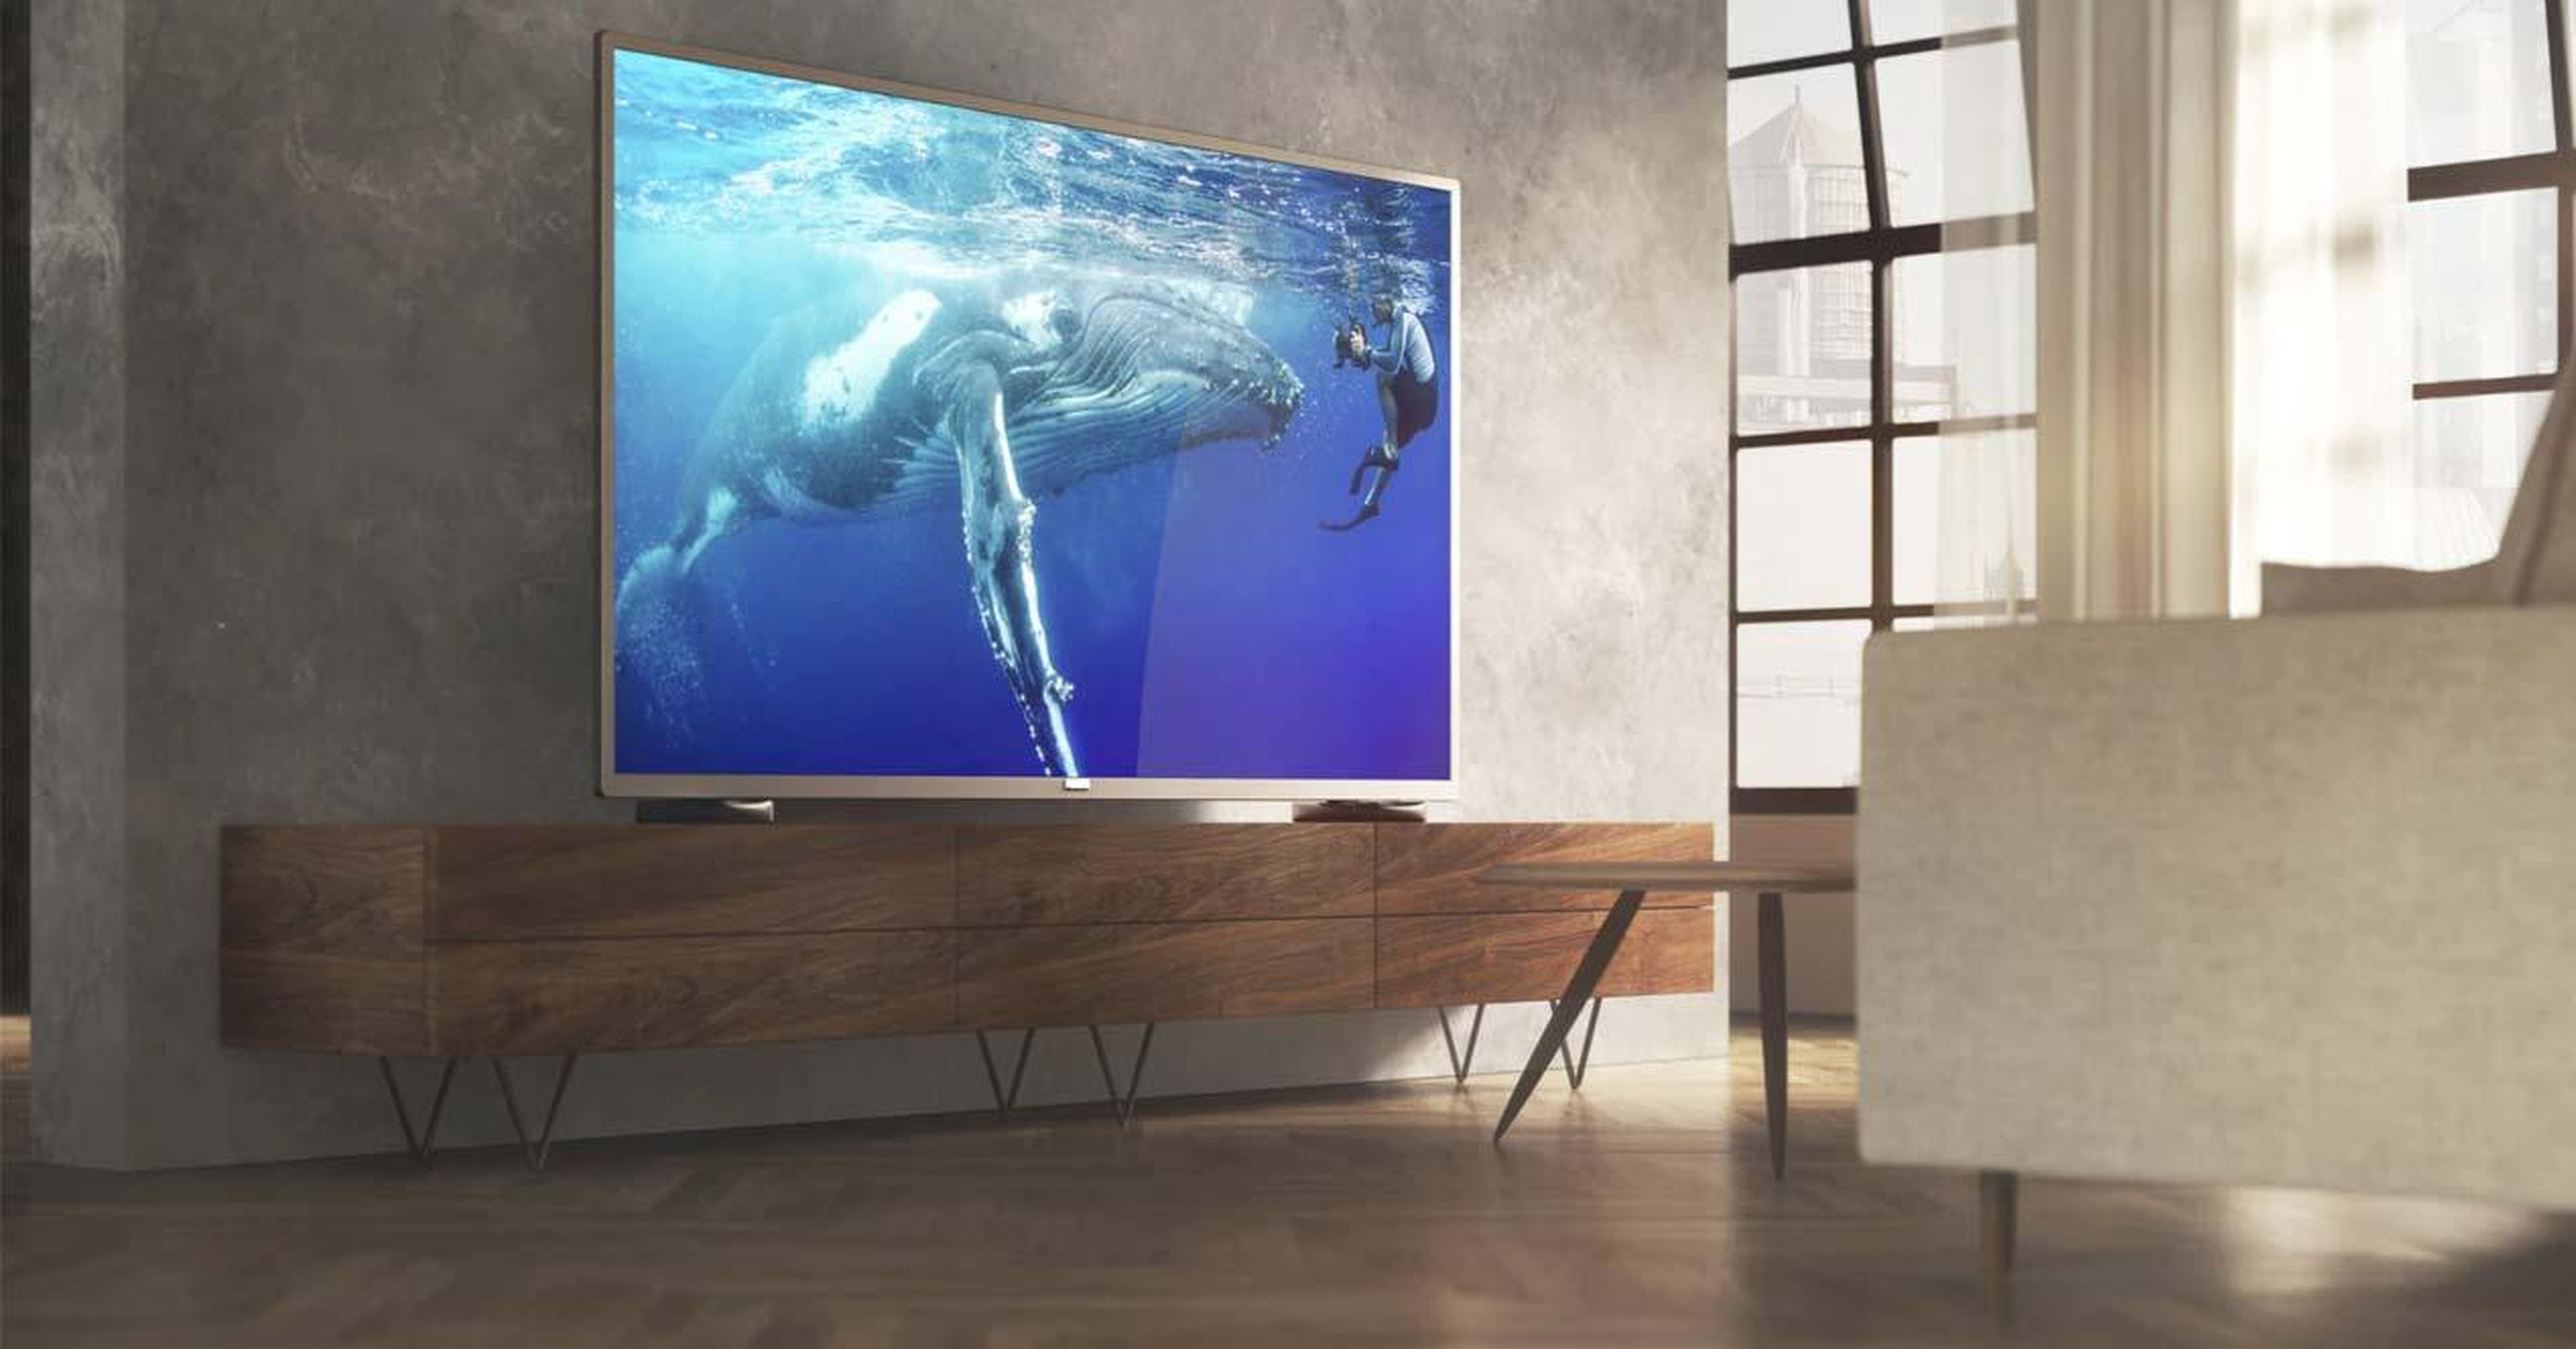 Pantalla Samsung 70 Pulgadas UHD 4K Smart TV a precio de socio